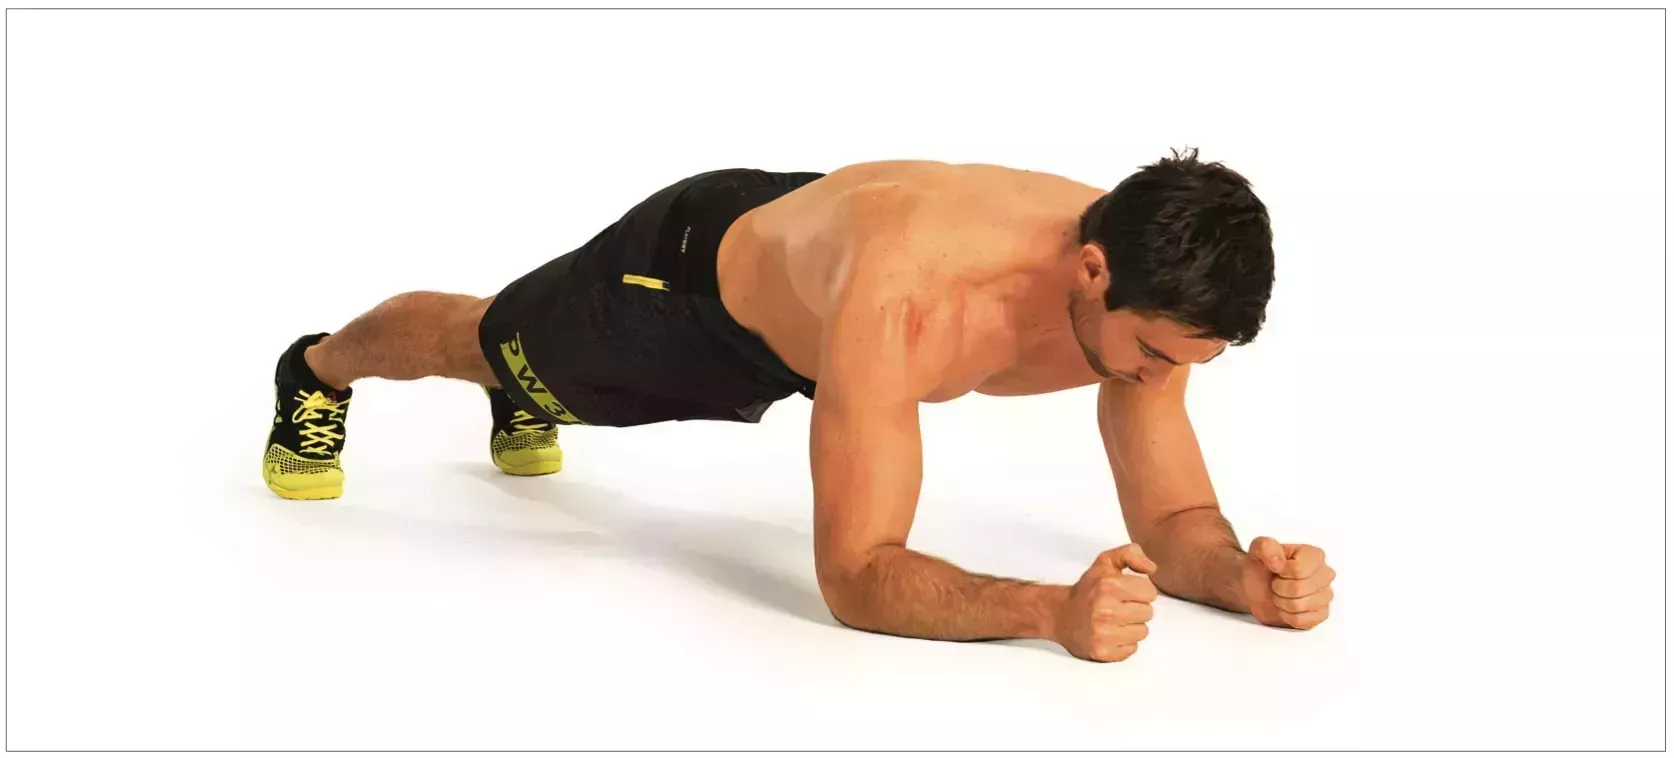 Entrenamiento de piernas y abdominales para quemar grasa y desarrollar músculo